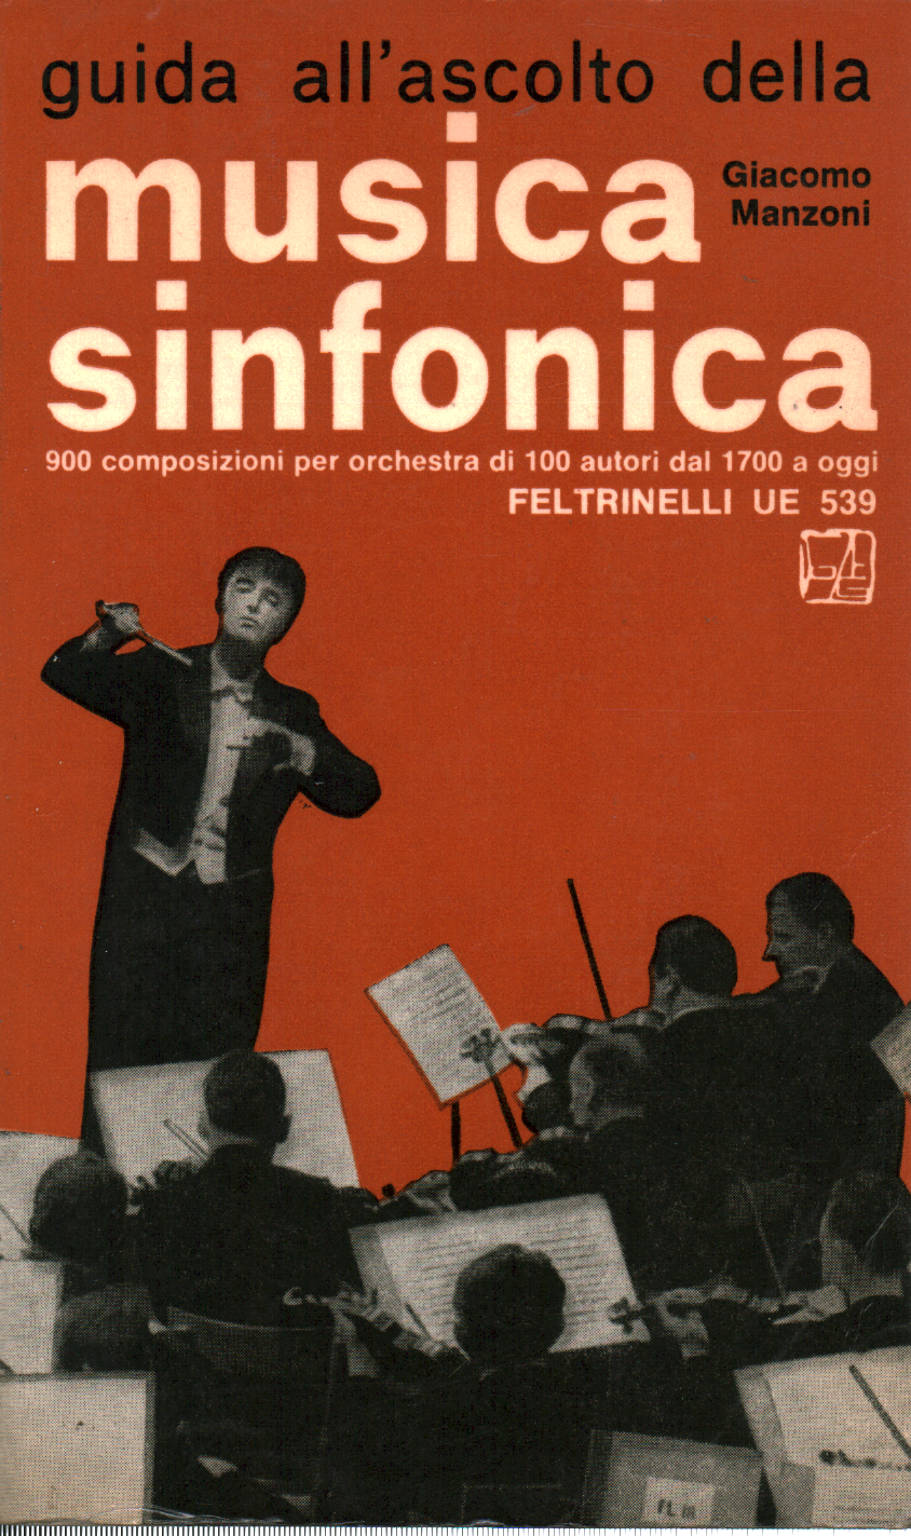 Guida all ascolto della musica sinfonica, Giacomo Manzoni